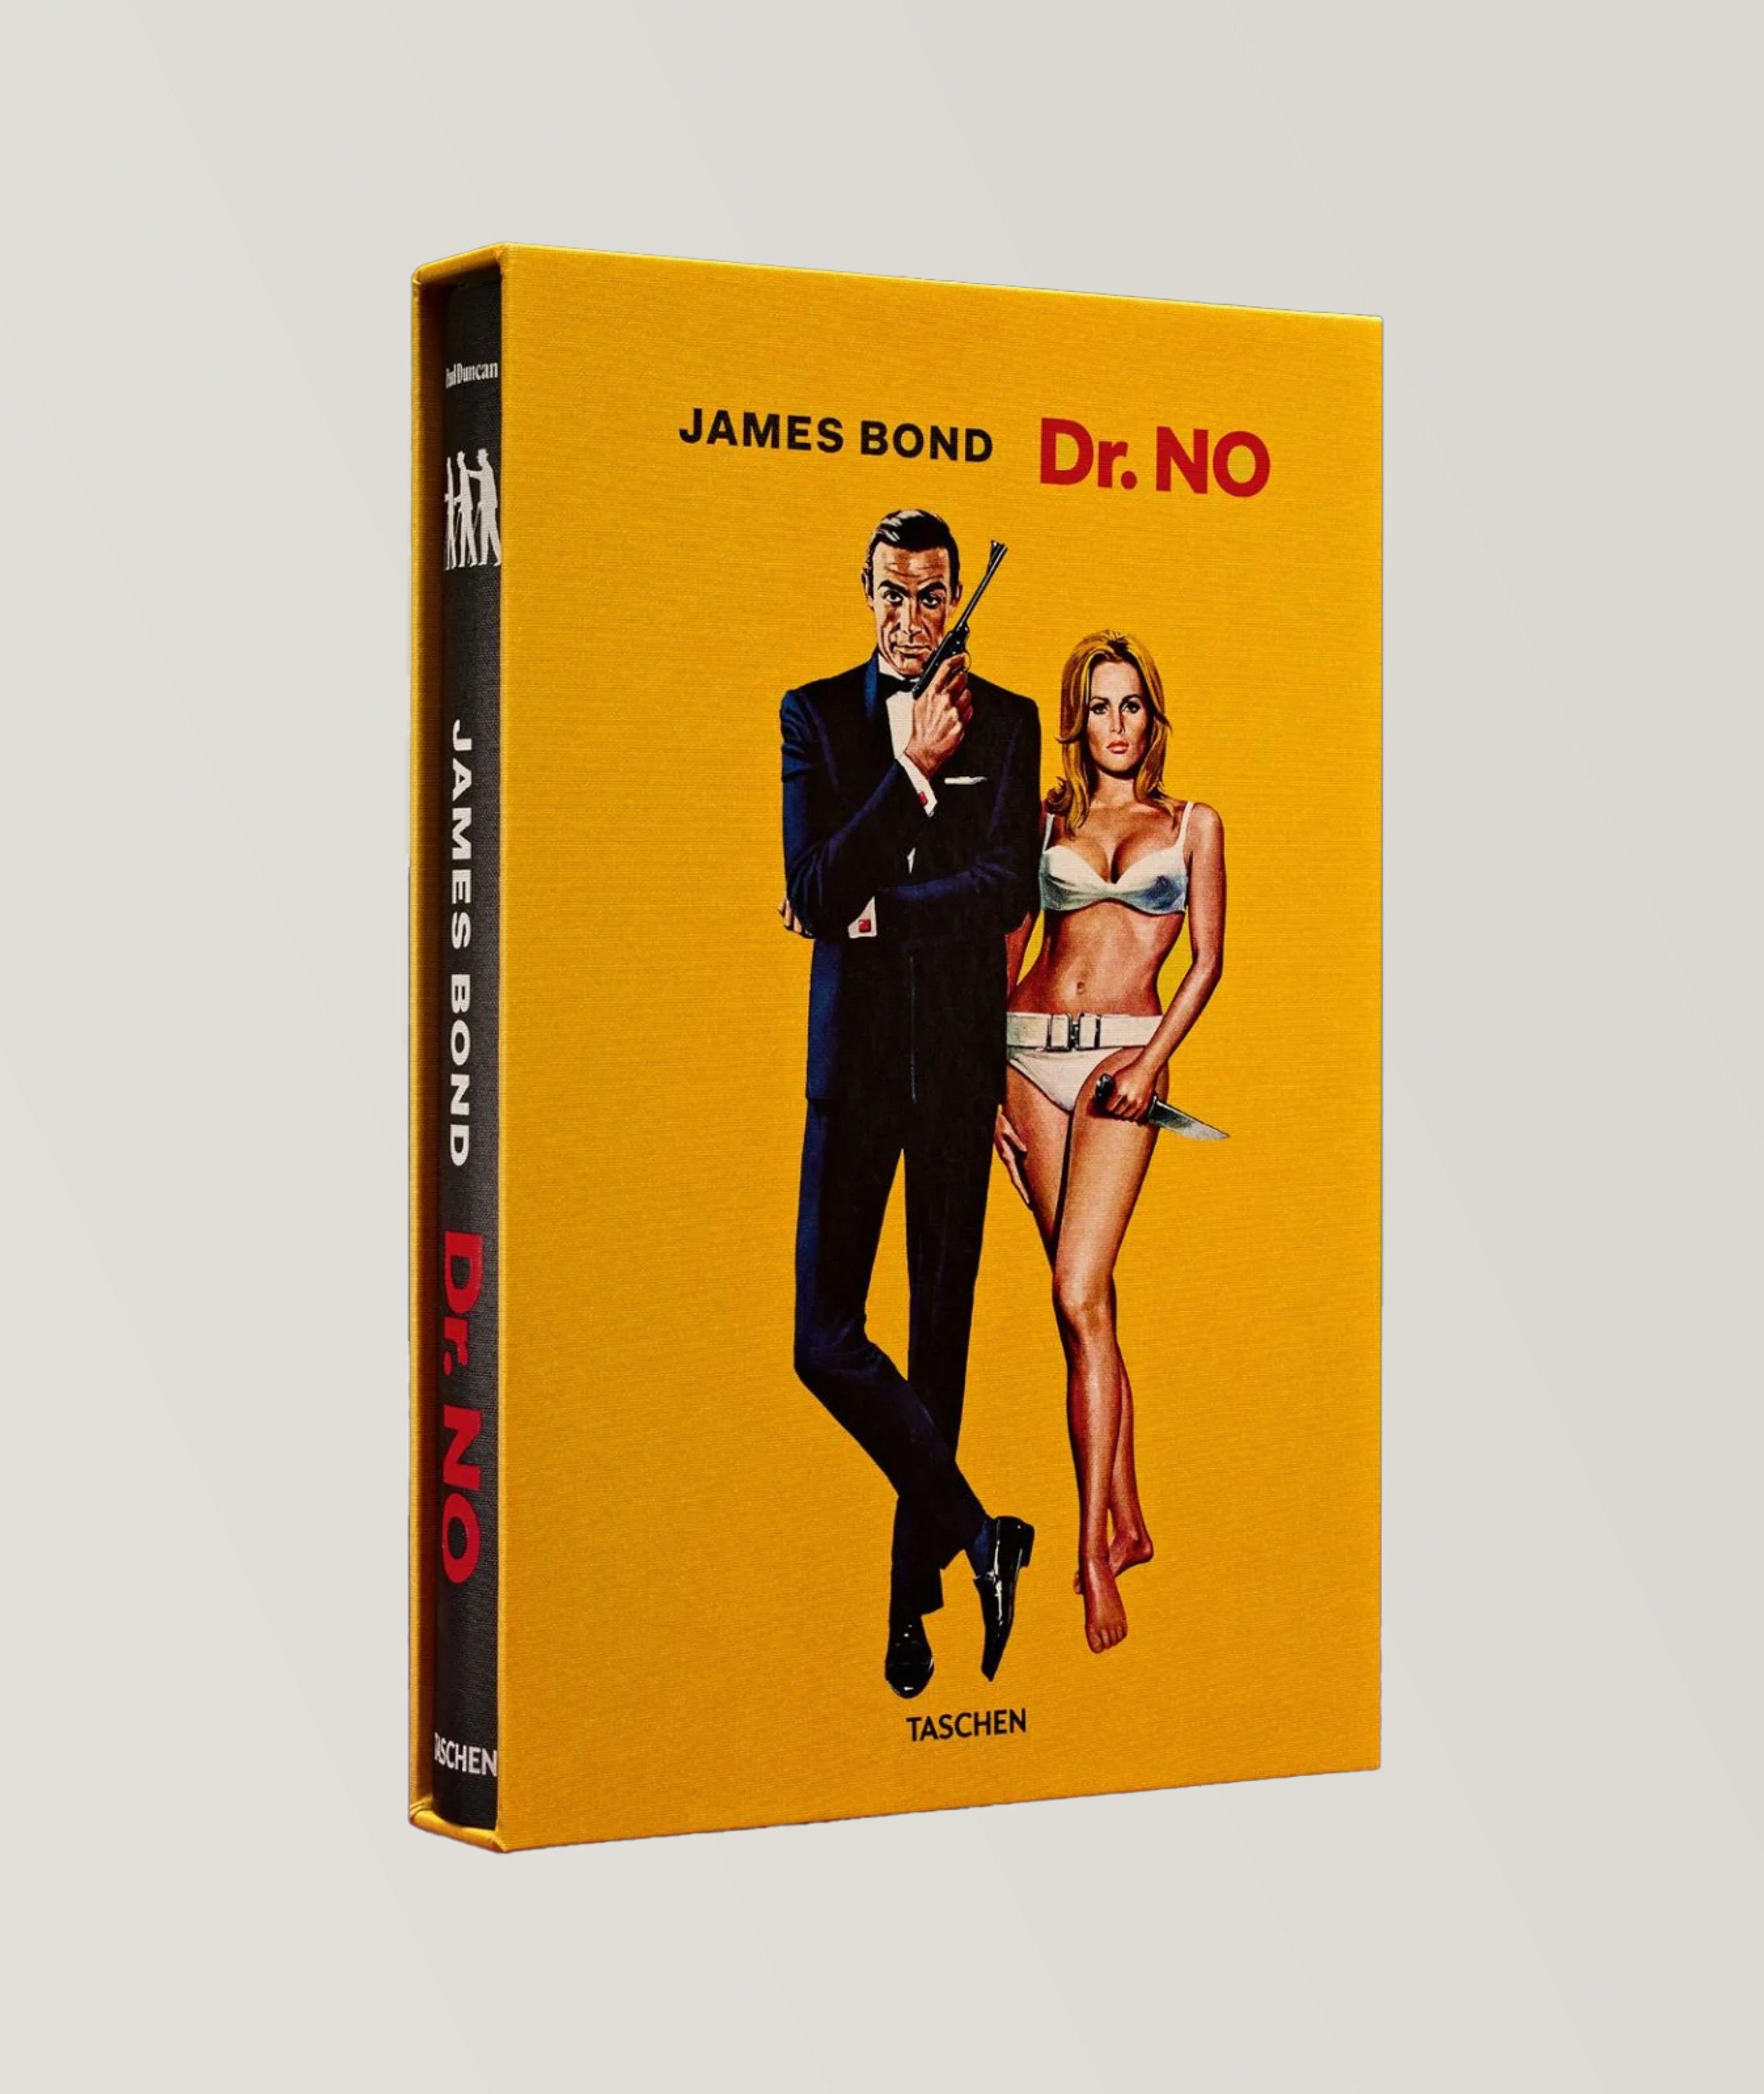 Taschen Livre « James Bond Dr. No », édition limitée